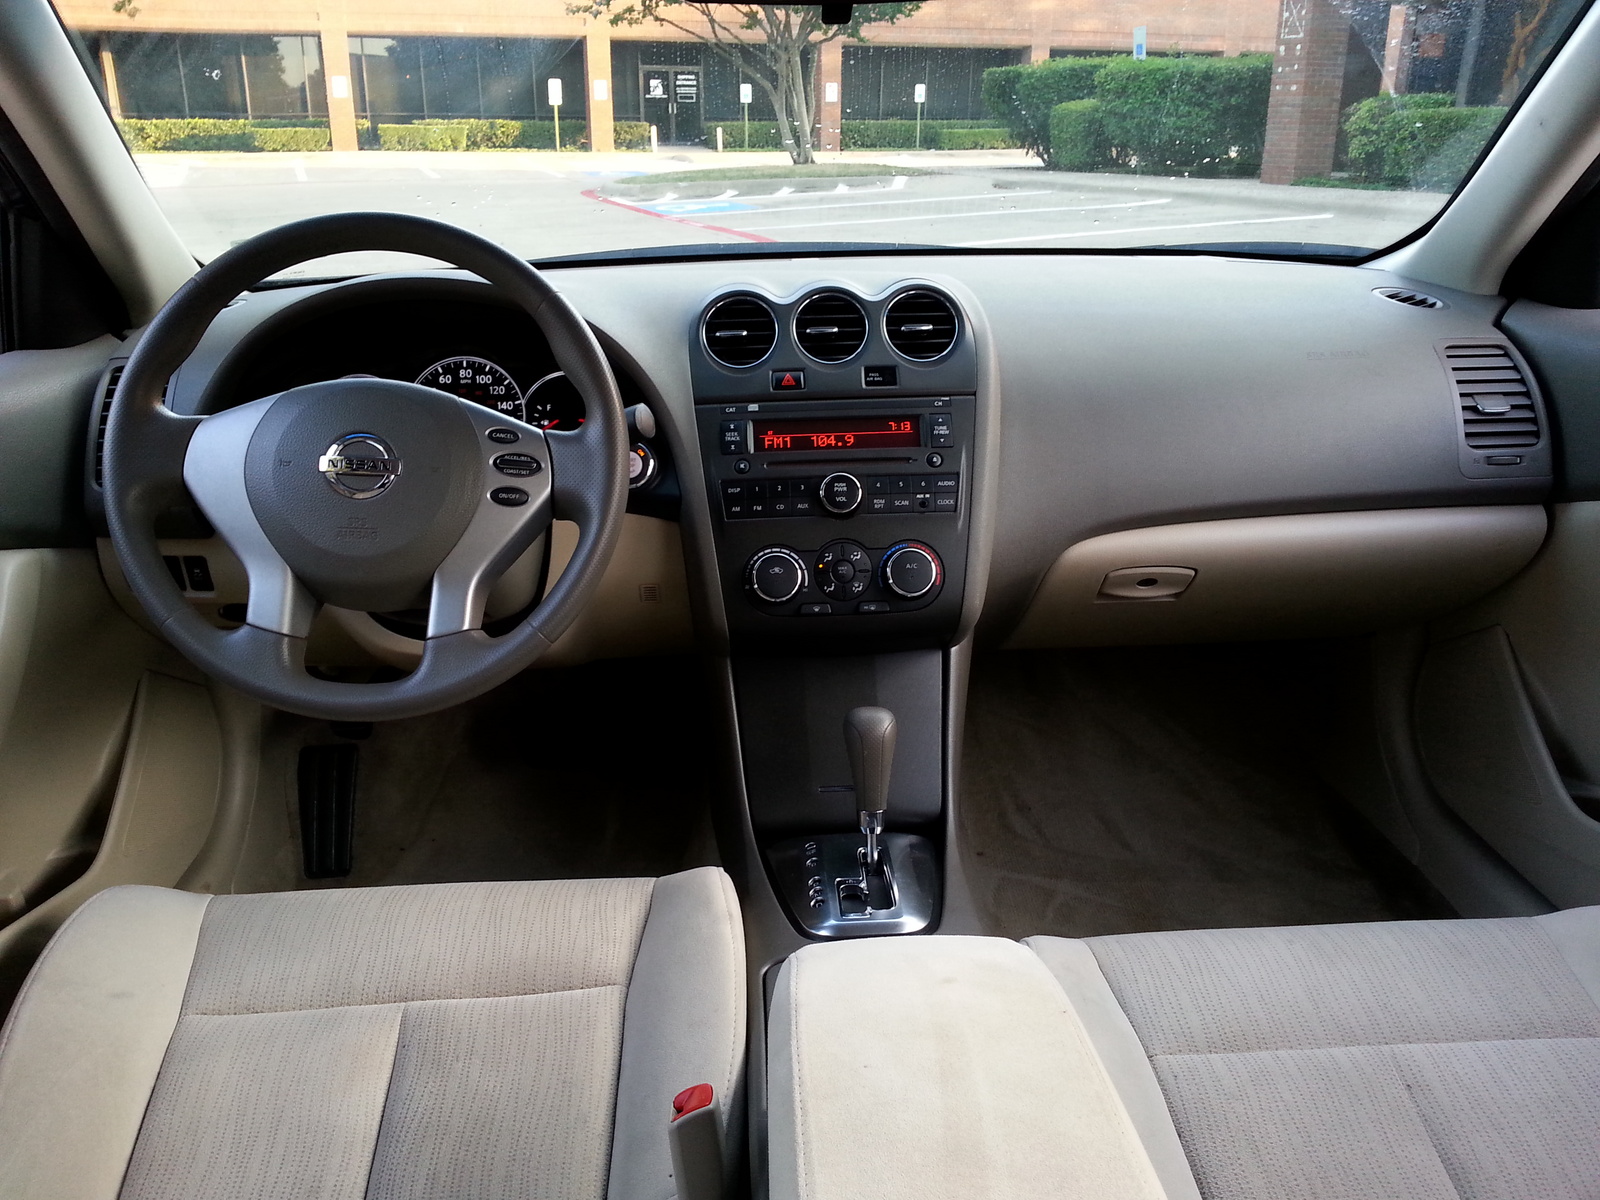 2011 Nissan altima interior dimensions #5